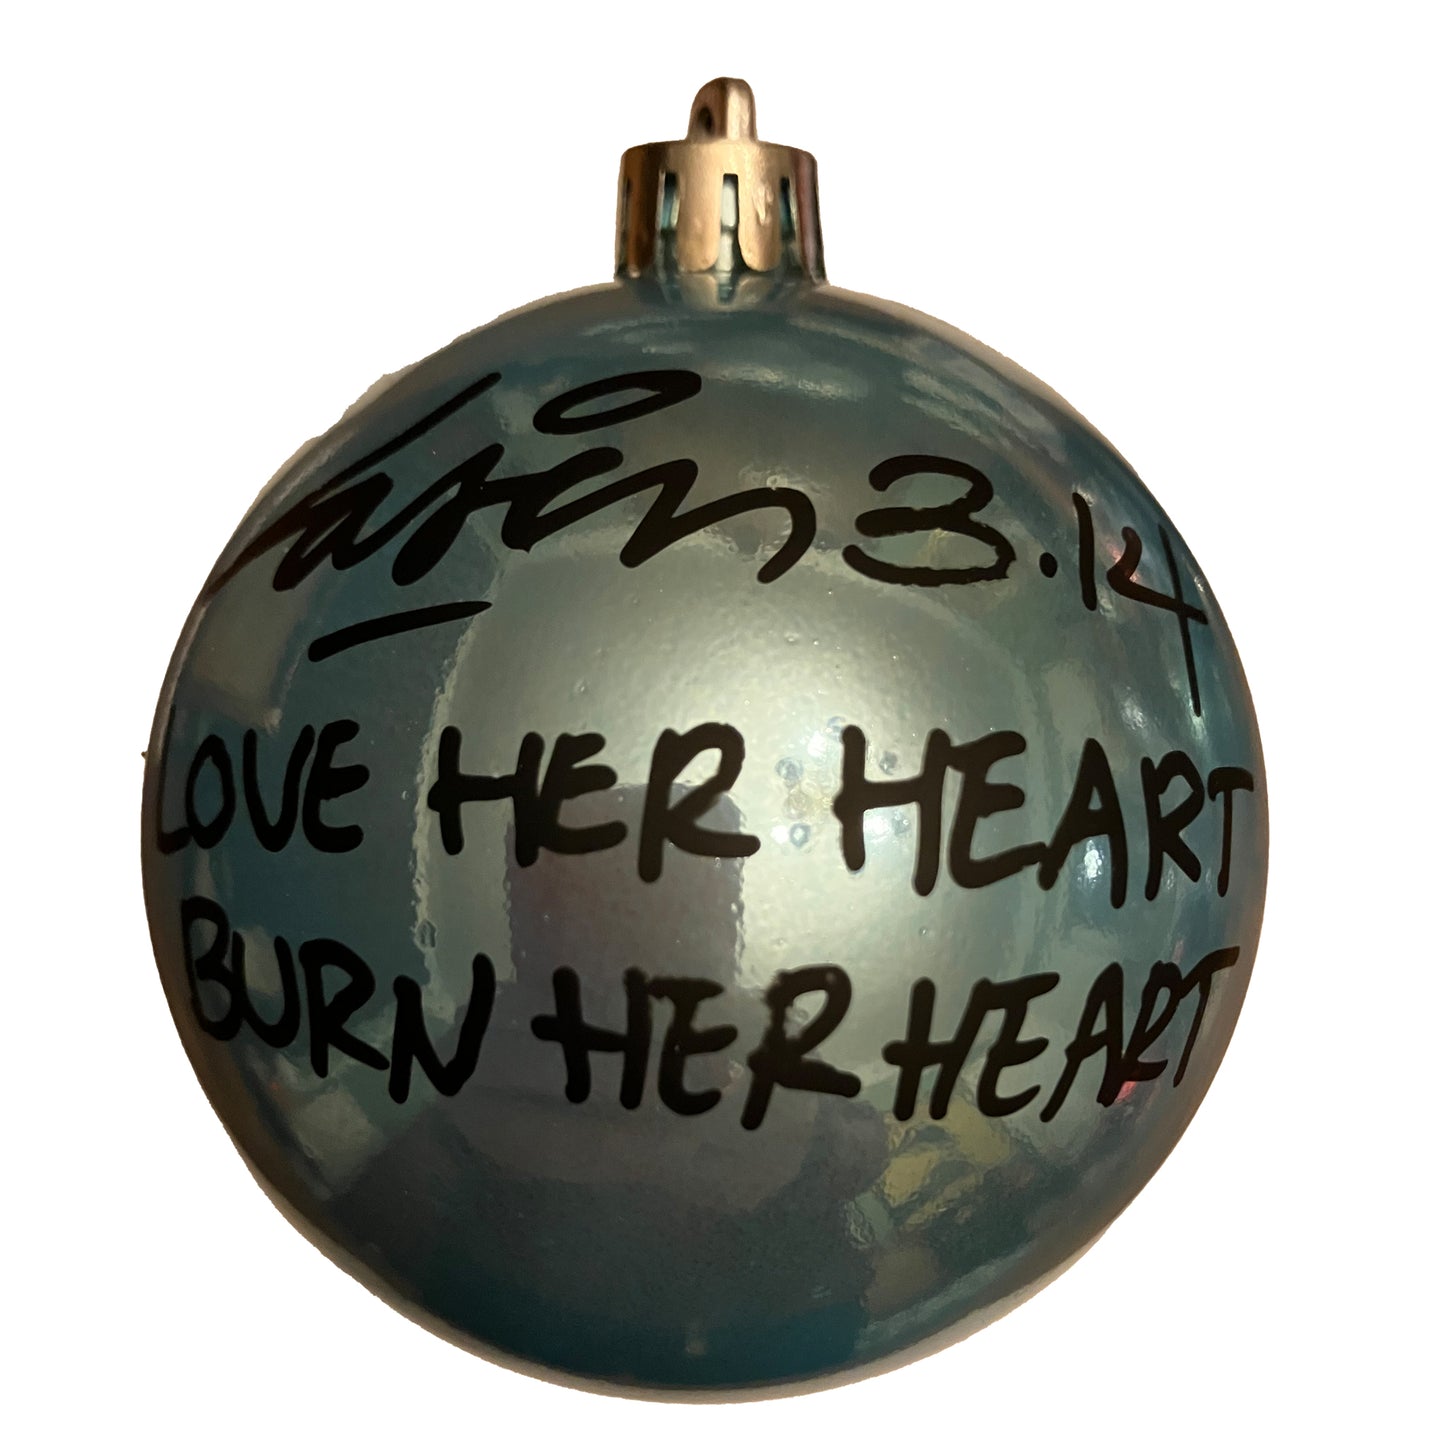 Love Her Heart Burn Her Heart - Light Blue Glossy Plastic | Laser 3.14 x Famous Amsterdam Christmas Ball Ornament